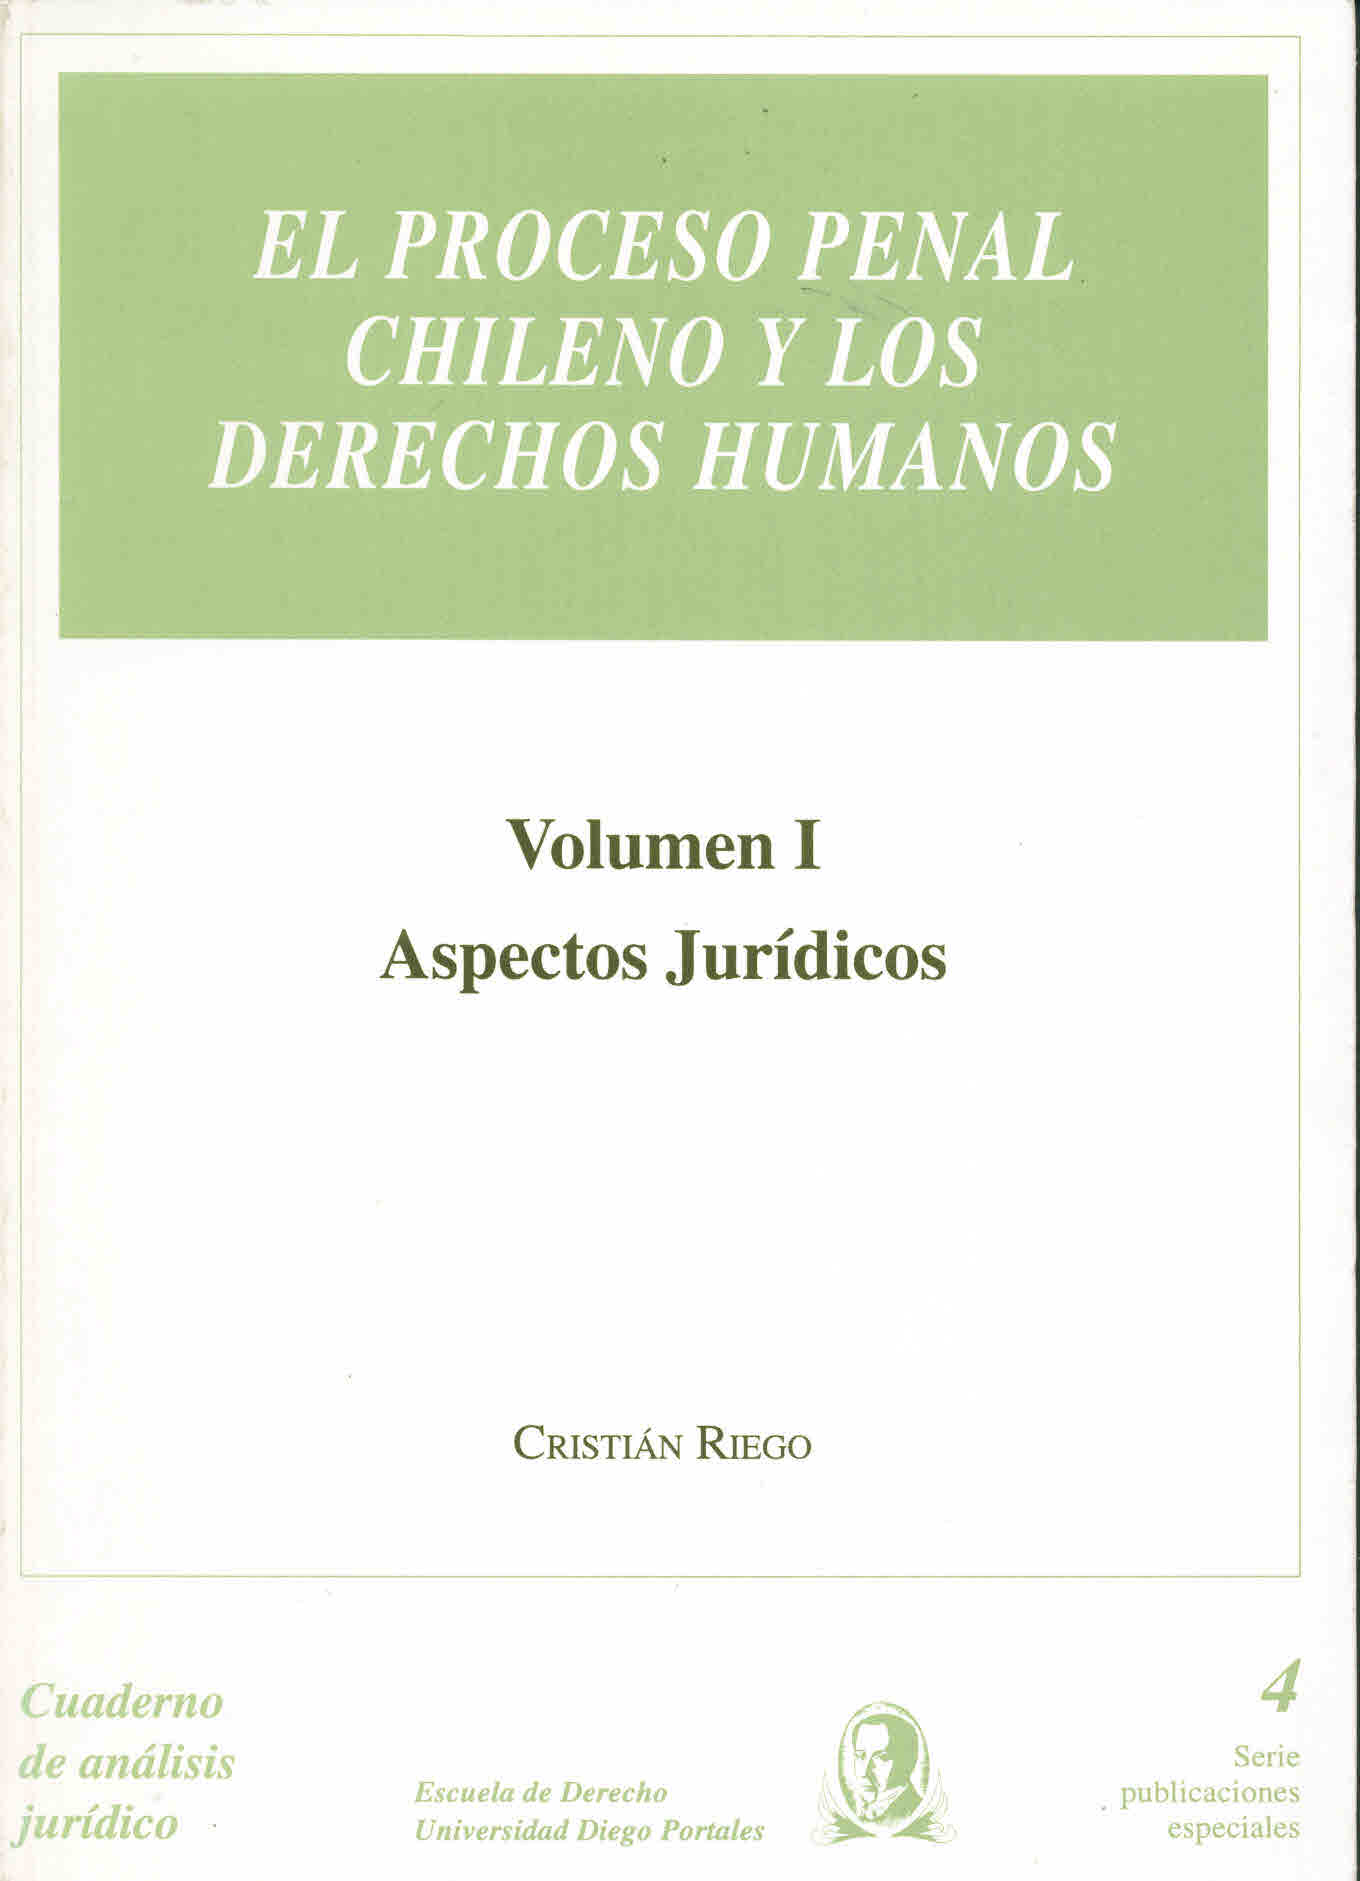 El proceso penal chileno y los derechos humanos. Volumen I: Aspectos jurídicos